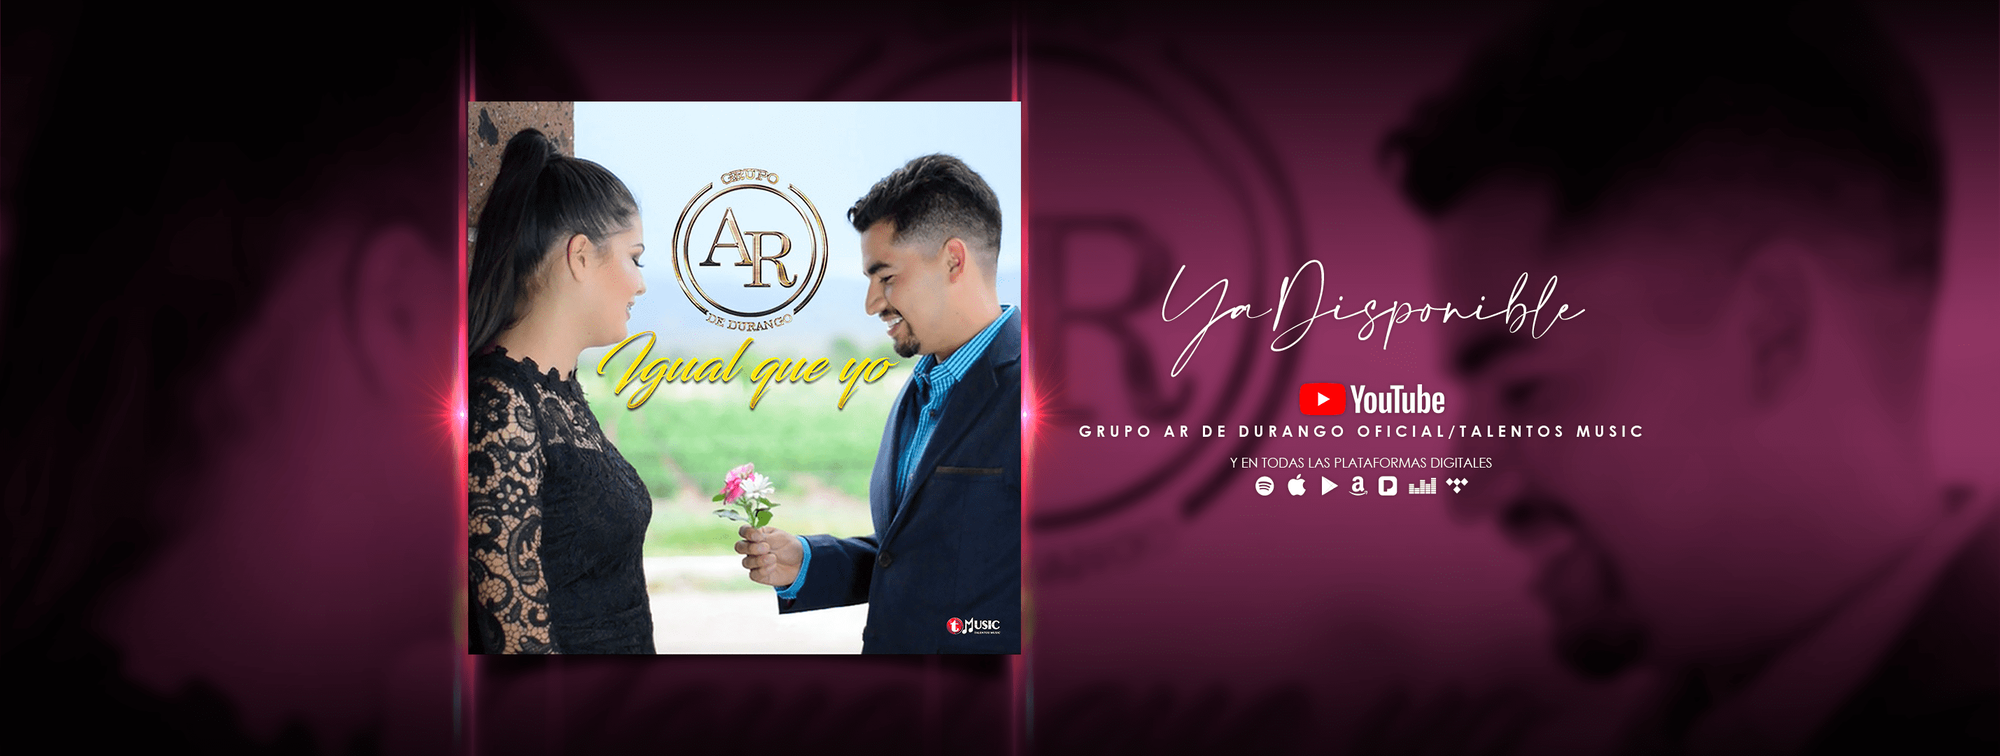 Lanzamiento de Estreno – “Grupo AR De Durango” presenta su nueva produccion musical “Igual Que Yo” Ya Disponible en YouTube y Plataformas Digitales.